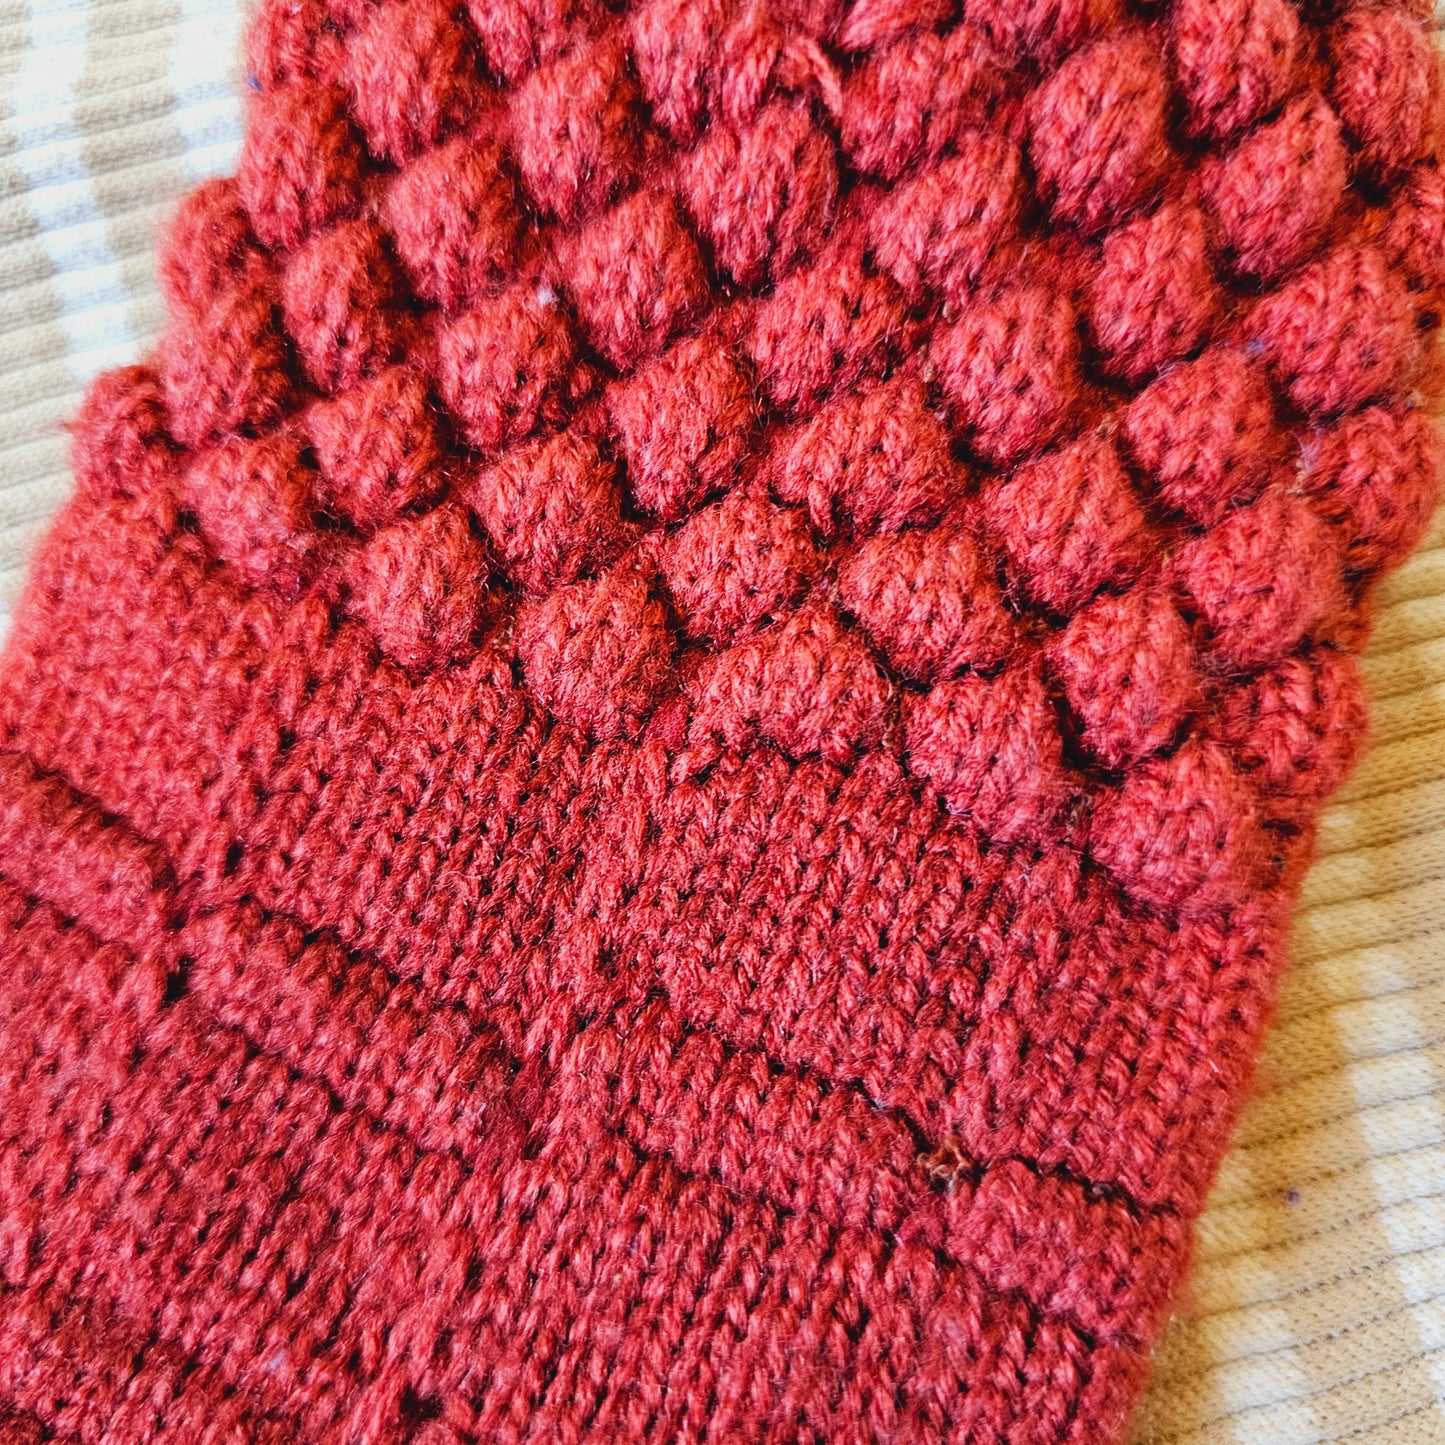 70s Knit Gloves